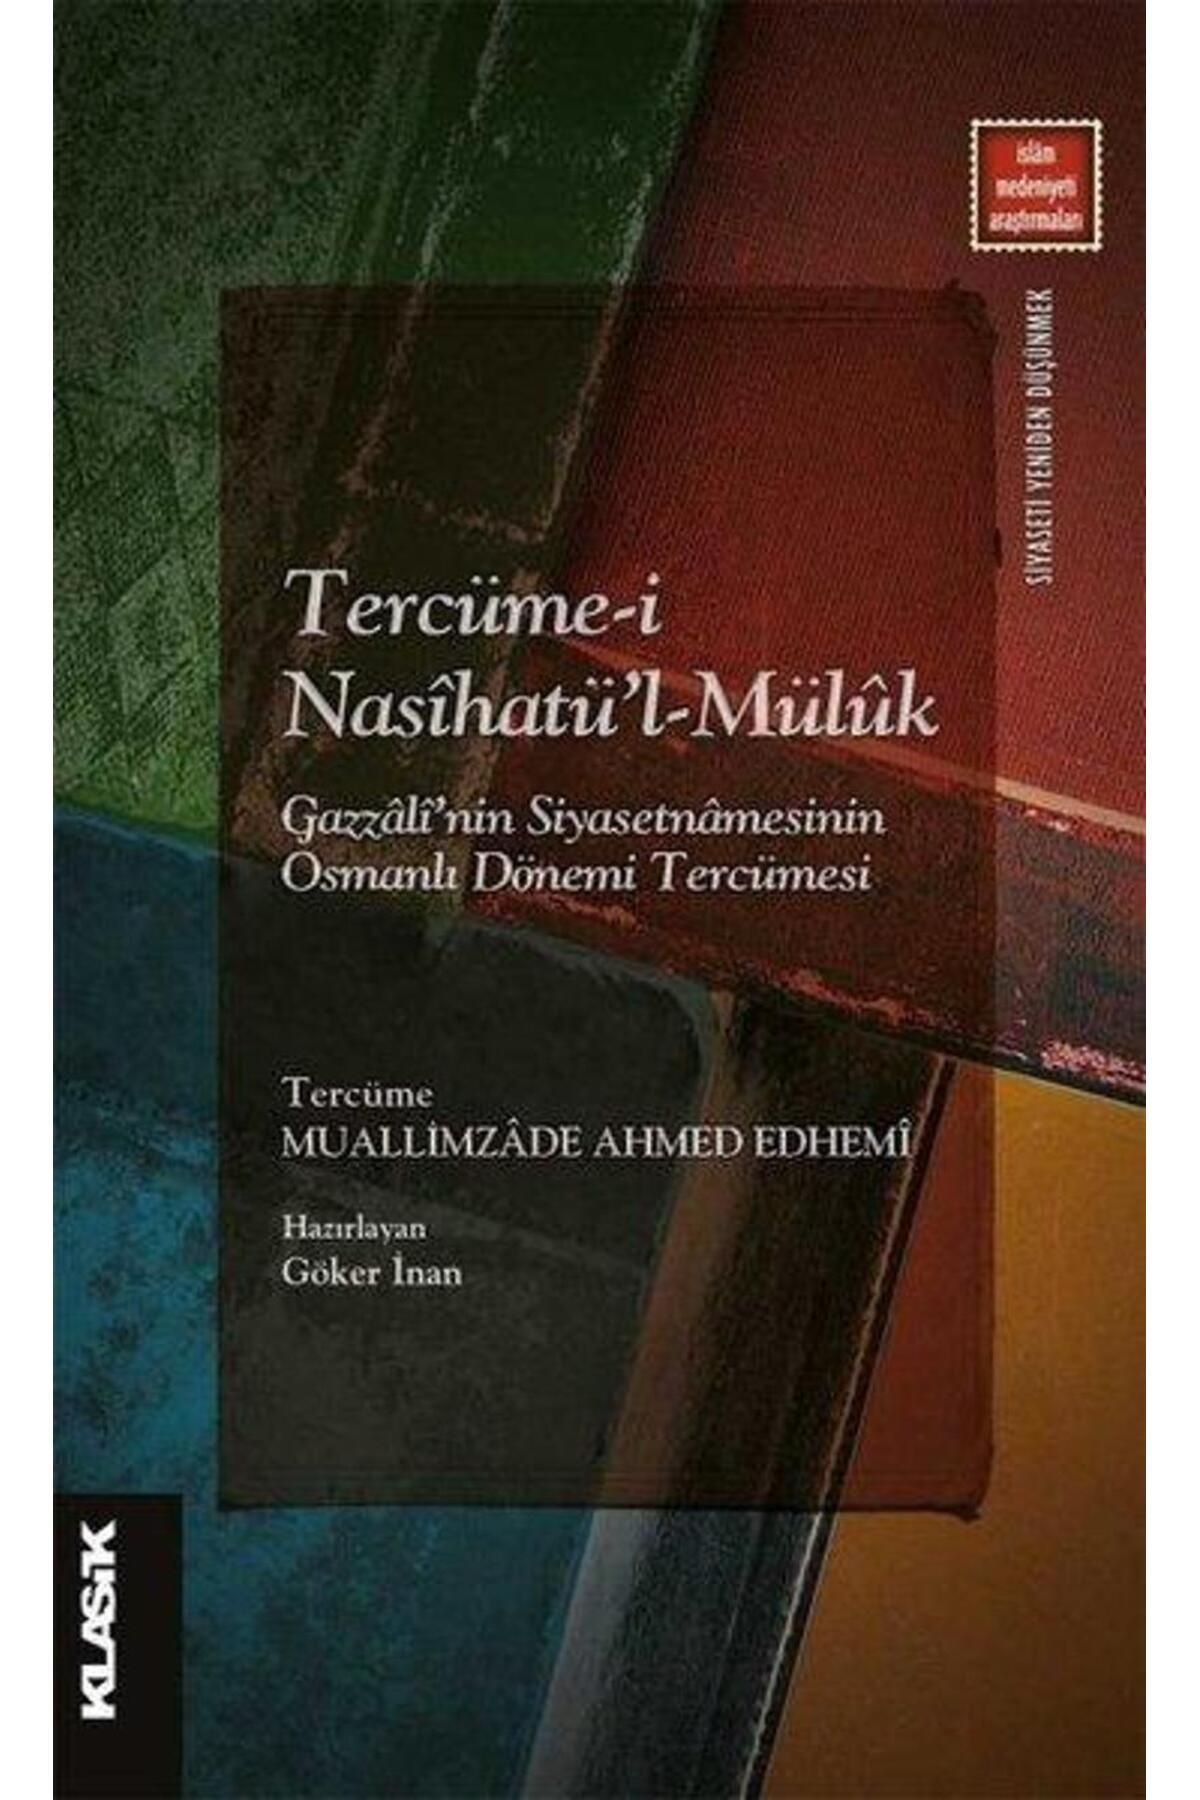 Klasik Yayınları Tercümei Nasihatü'lMüluk: Gazzali'nin Siyasetnamesinin Osmanlı Dönemi Tercümesi